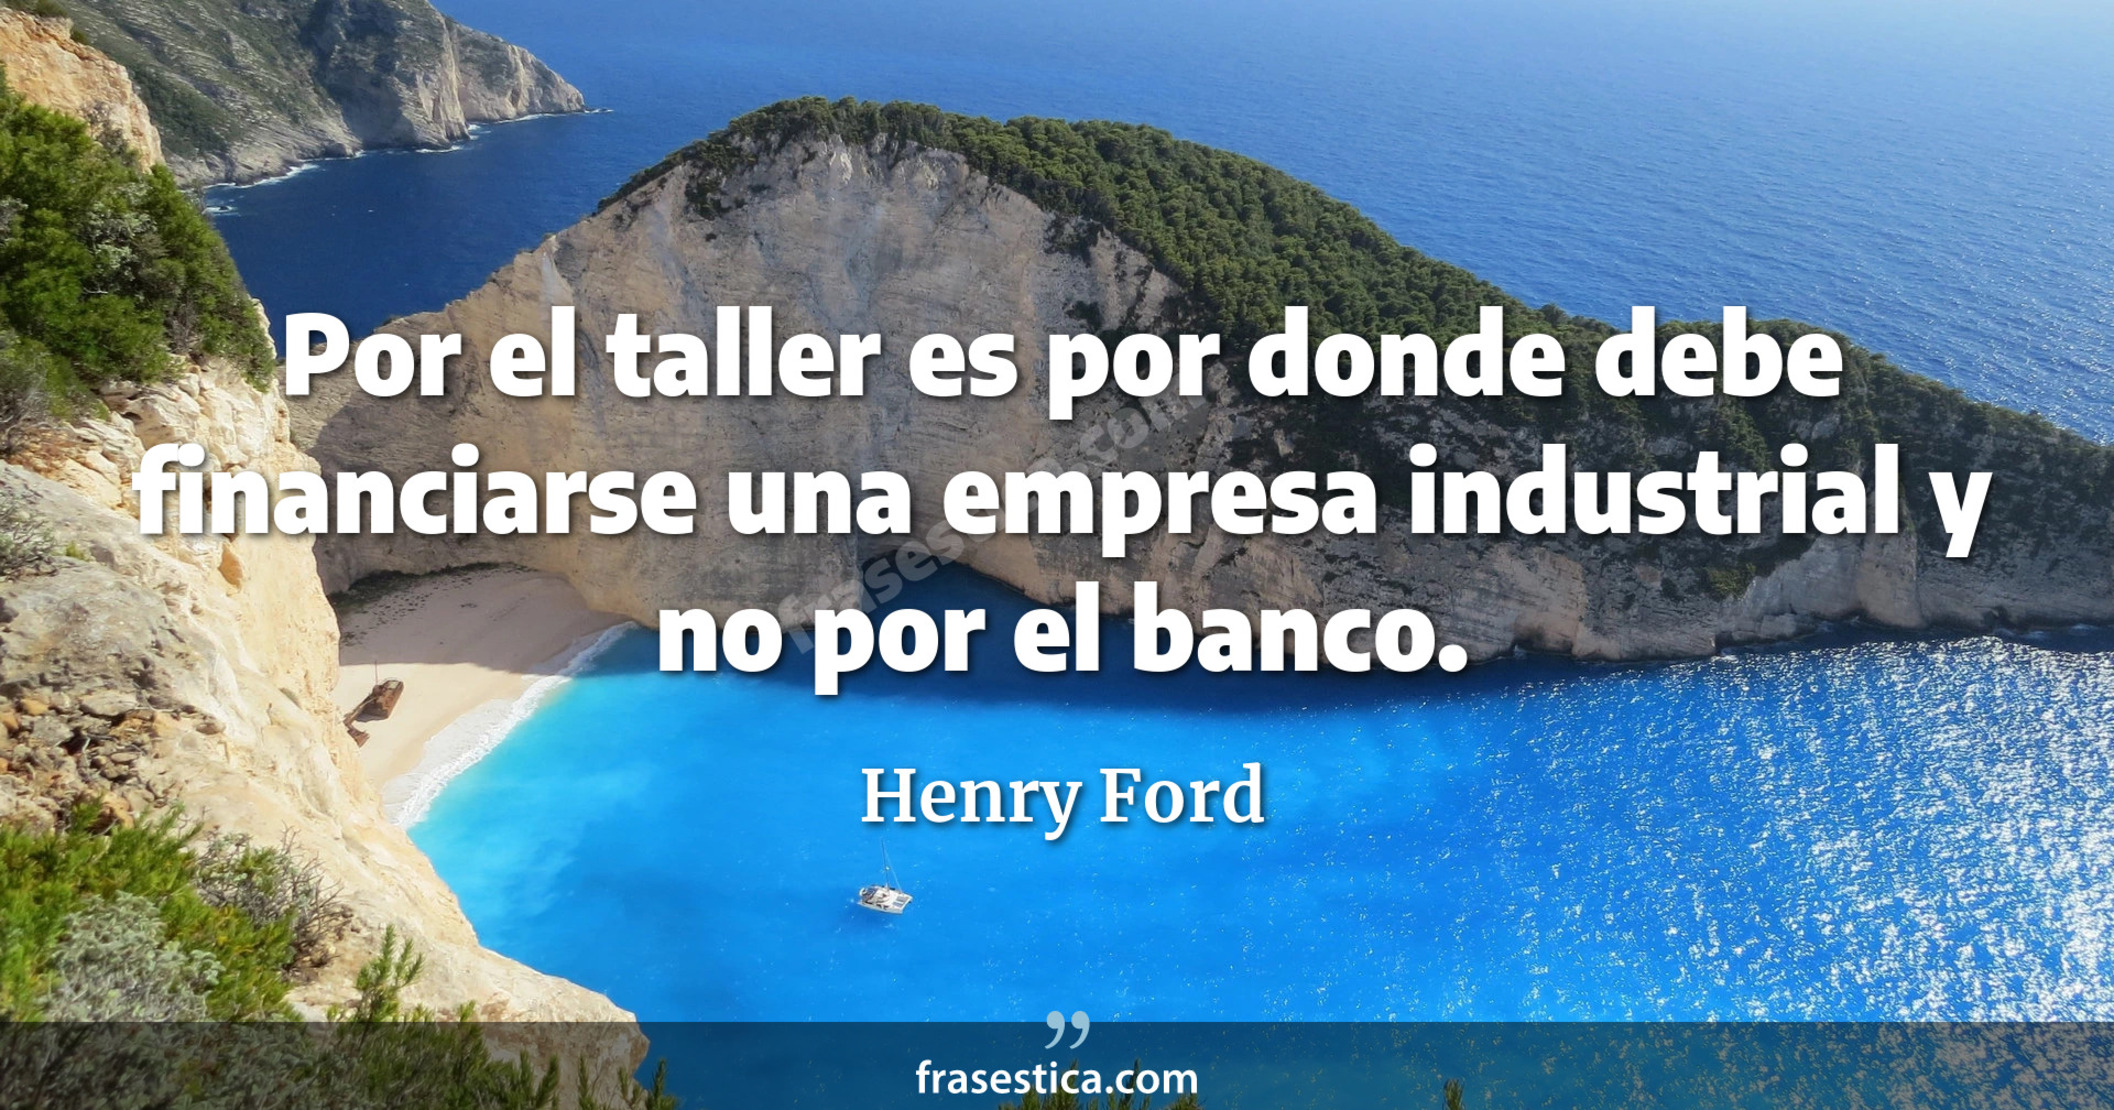 Por el taller es por donde debe financiarse una empresa industrial y no por el banco. - Henry Ford